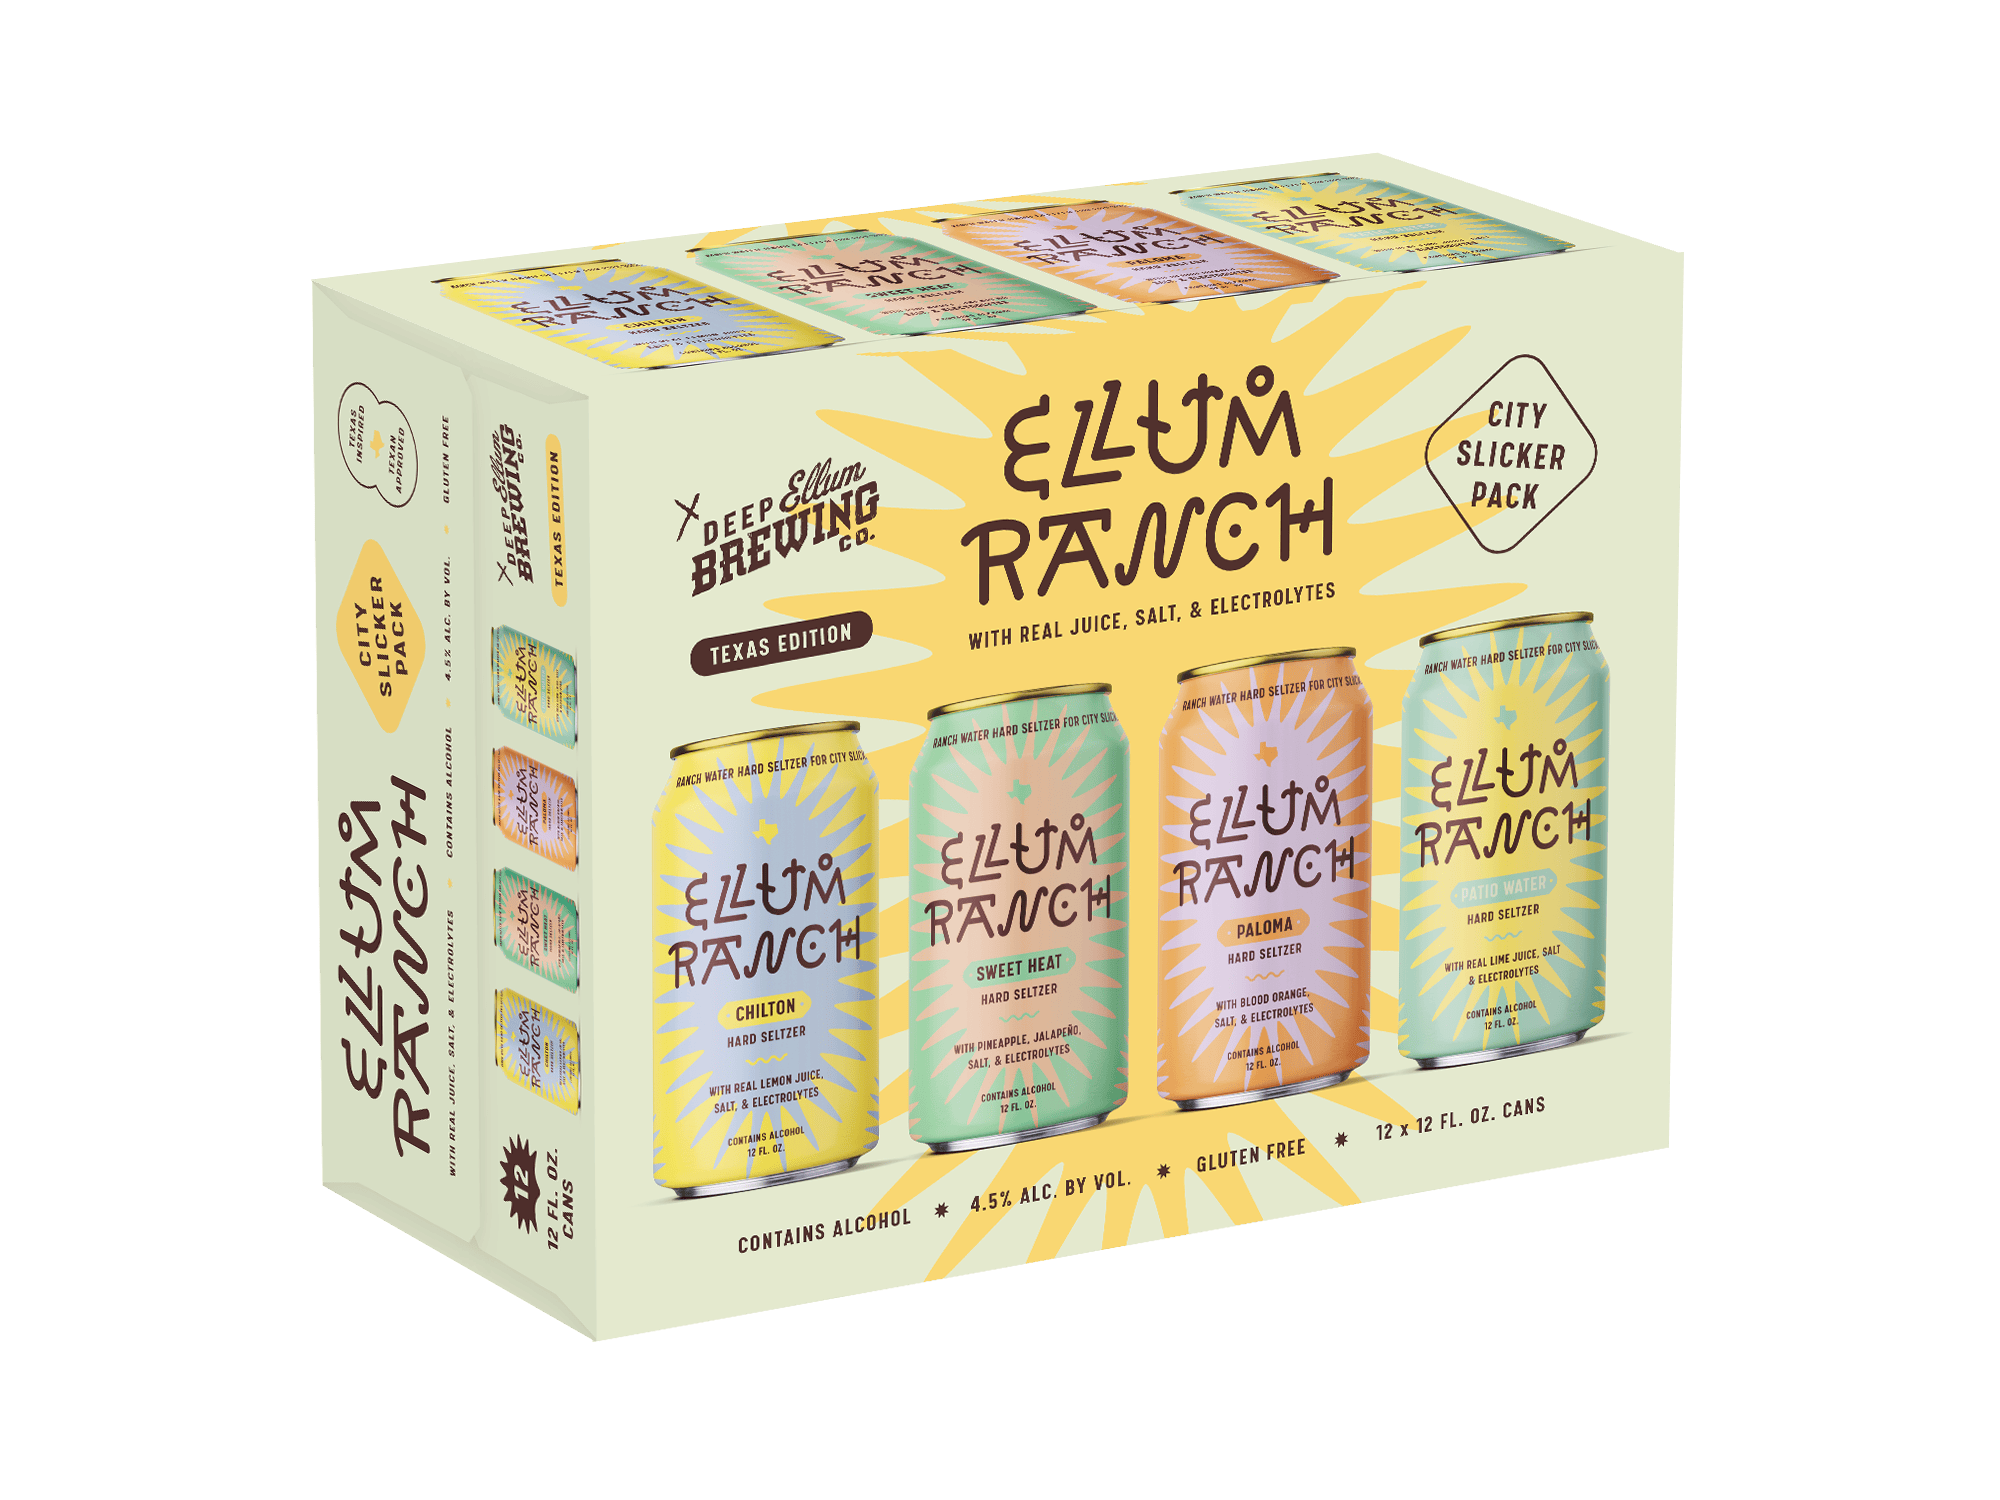 Ellum-Ranch-Variety-Pack-Mockup-v5